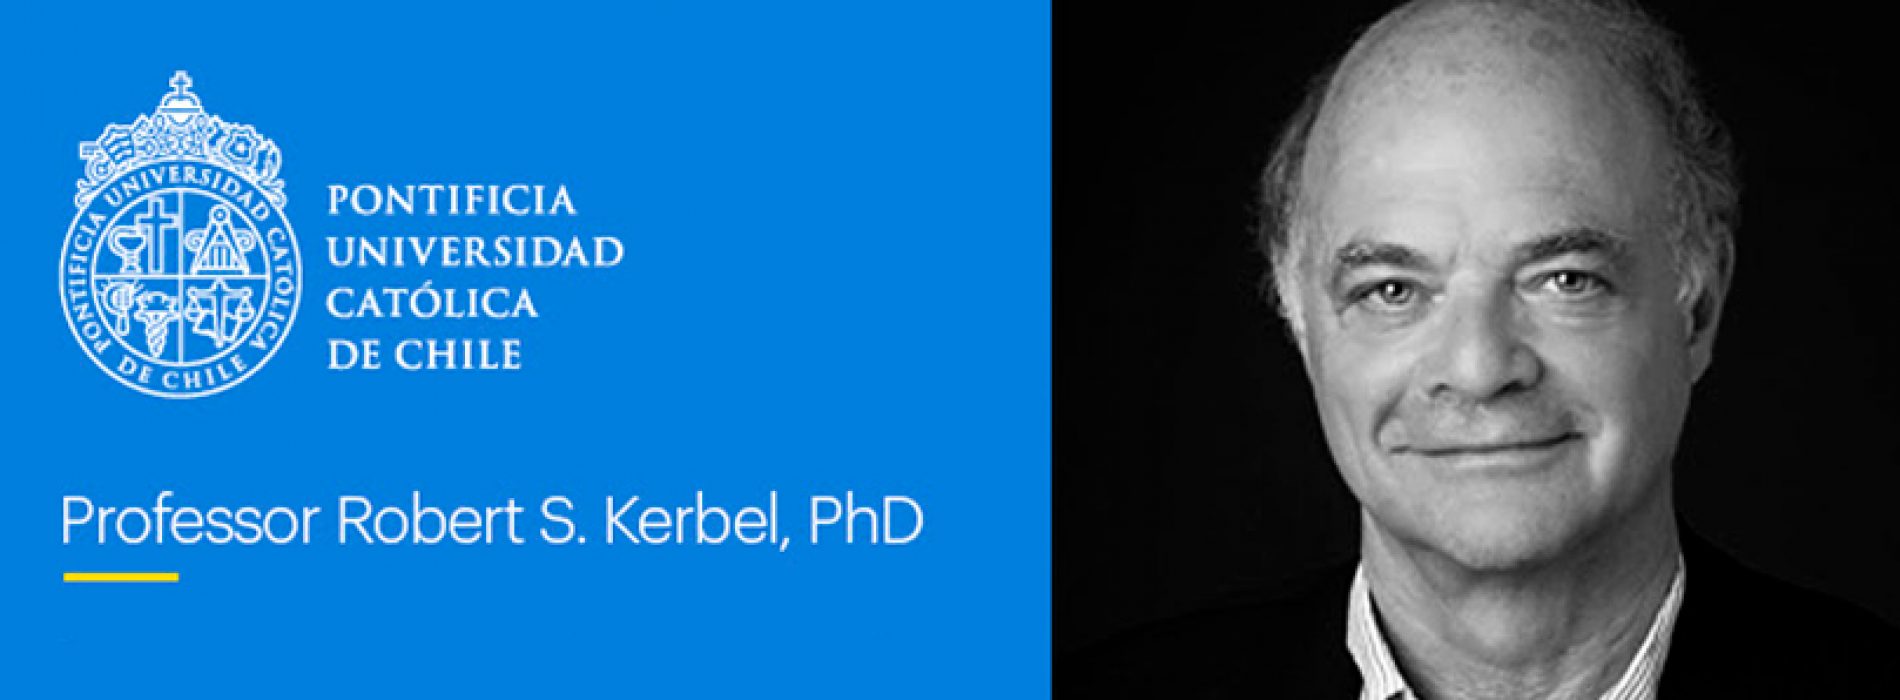 Conferencia dictada por Dr. Robert S. Kerbel, PhD